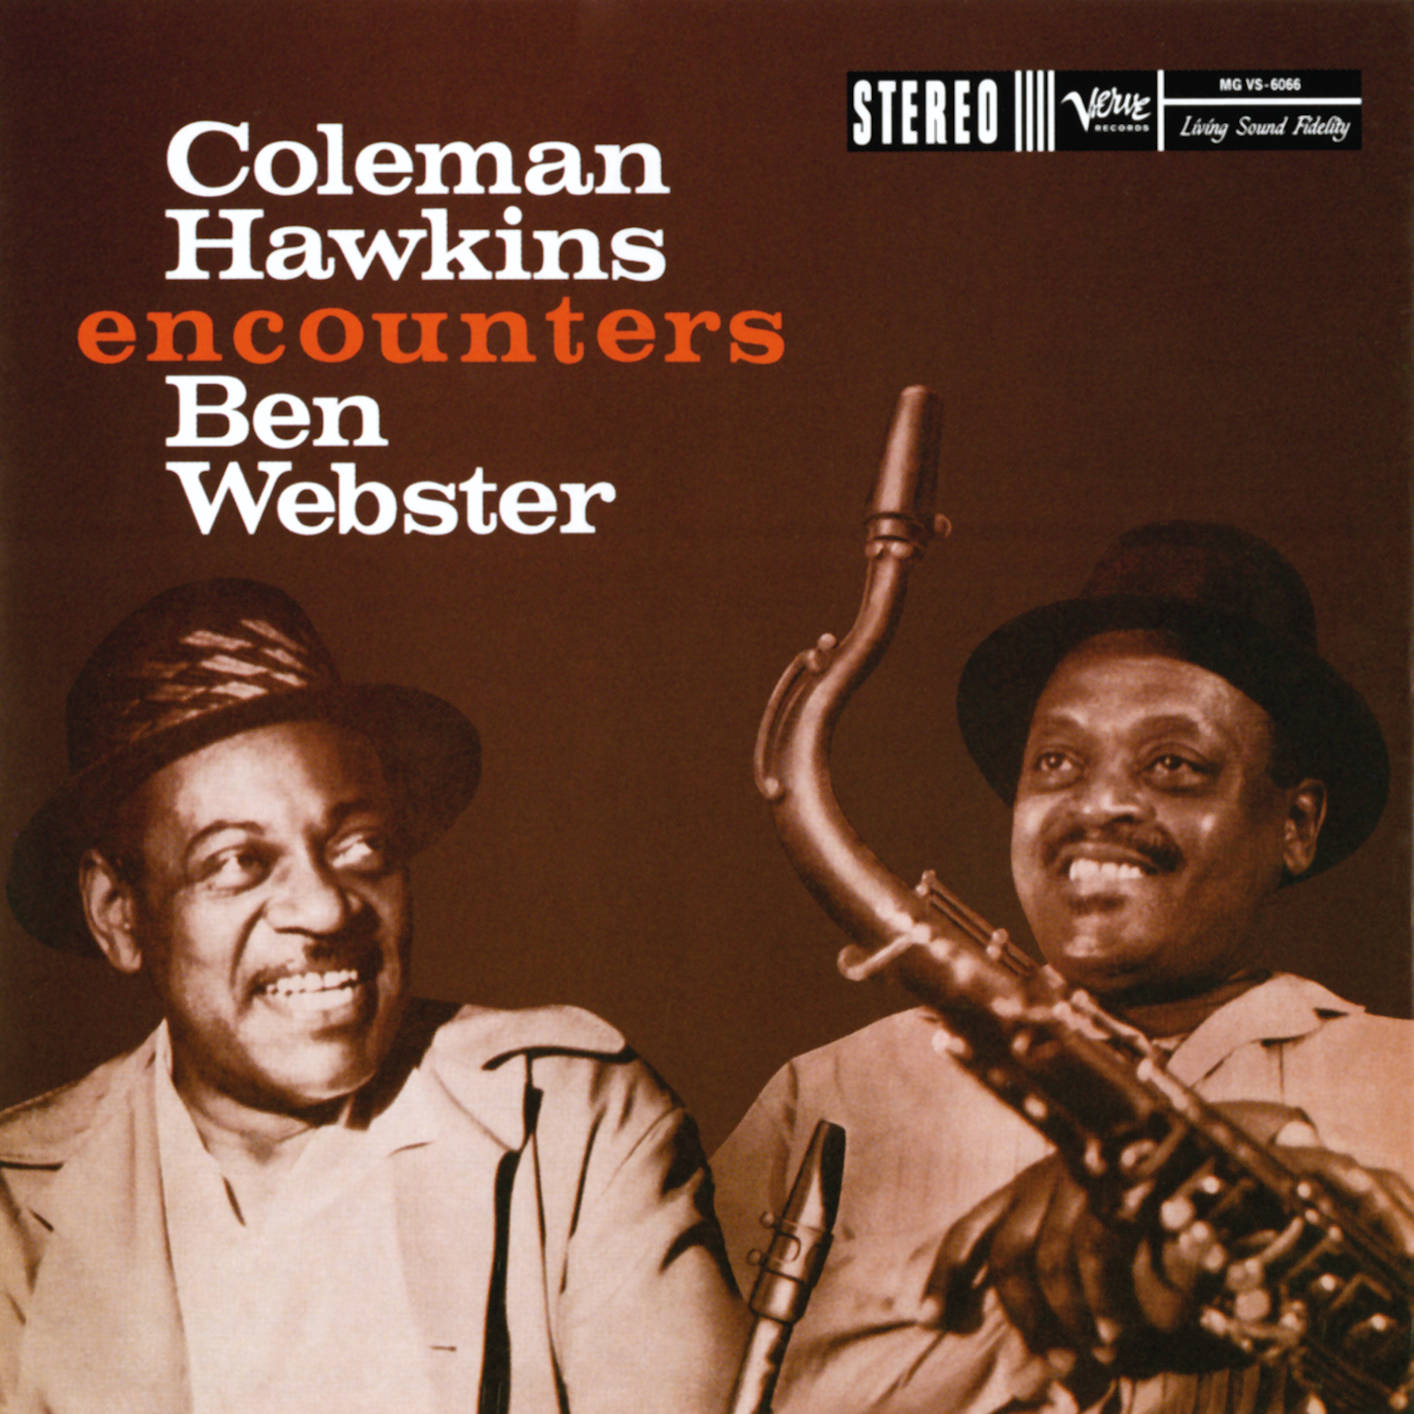 Coleman Hawkins Encounter Ben Webster Poster Wallpaper